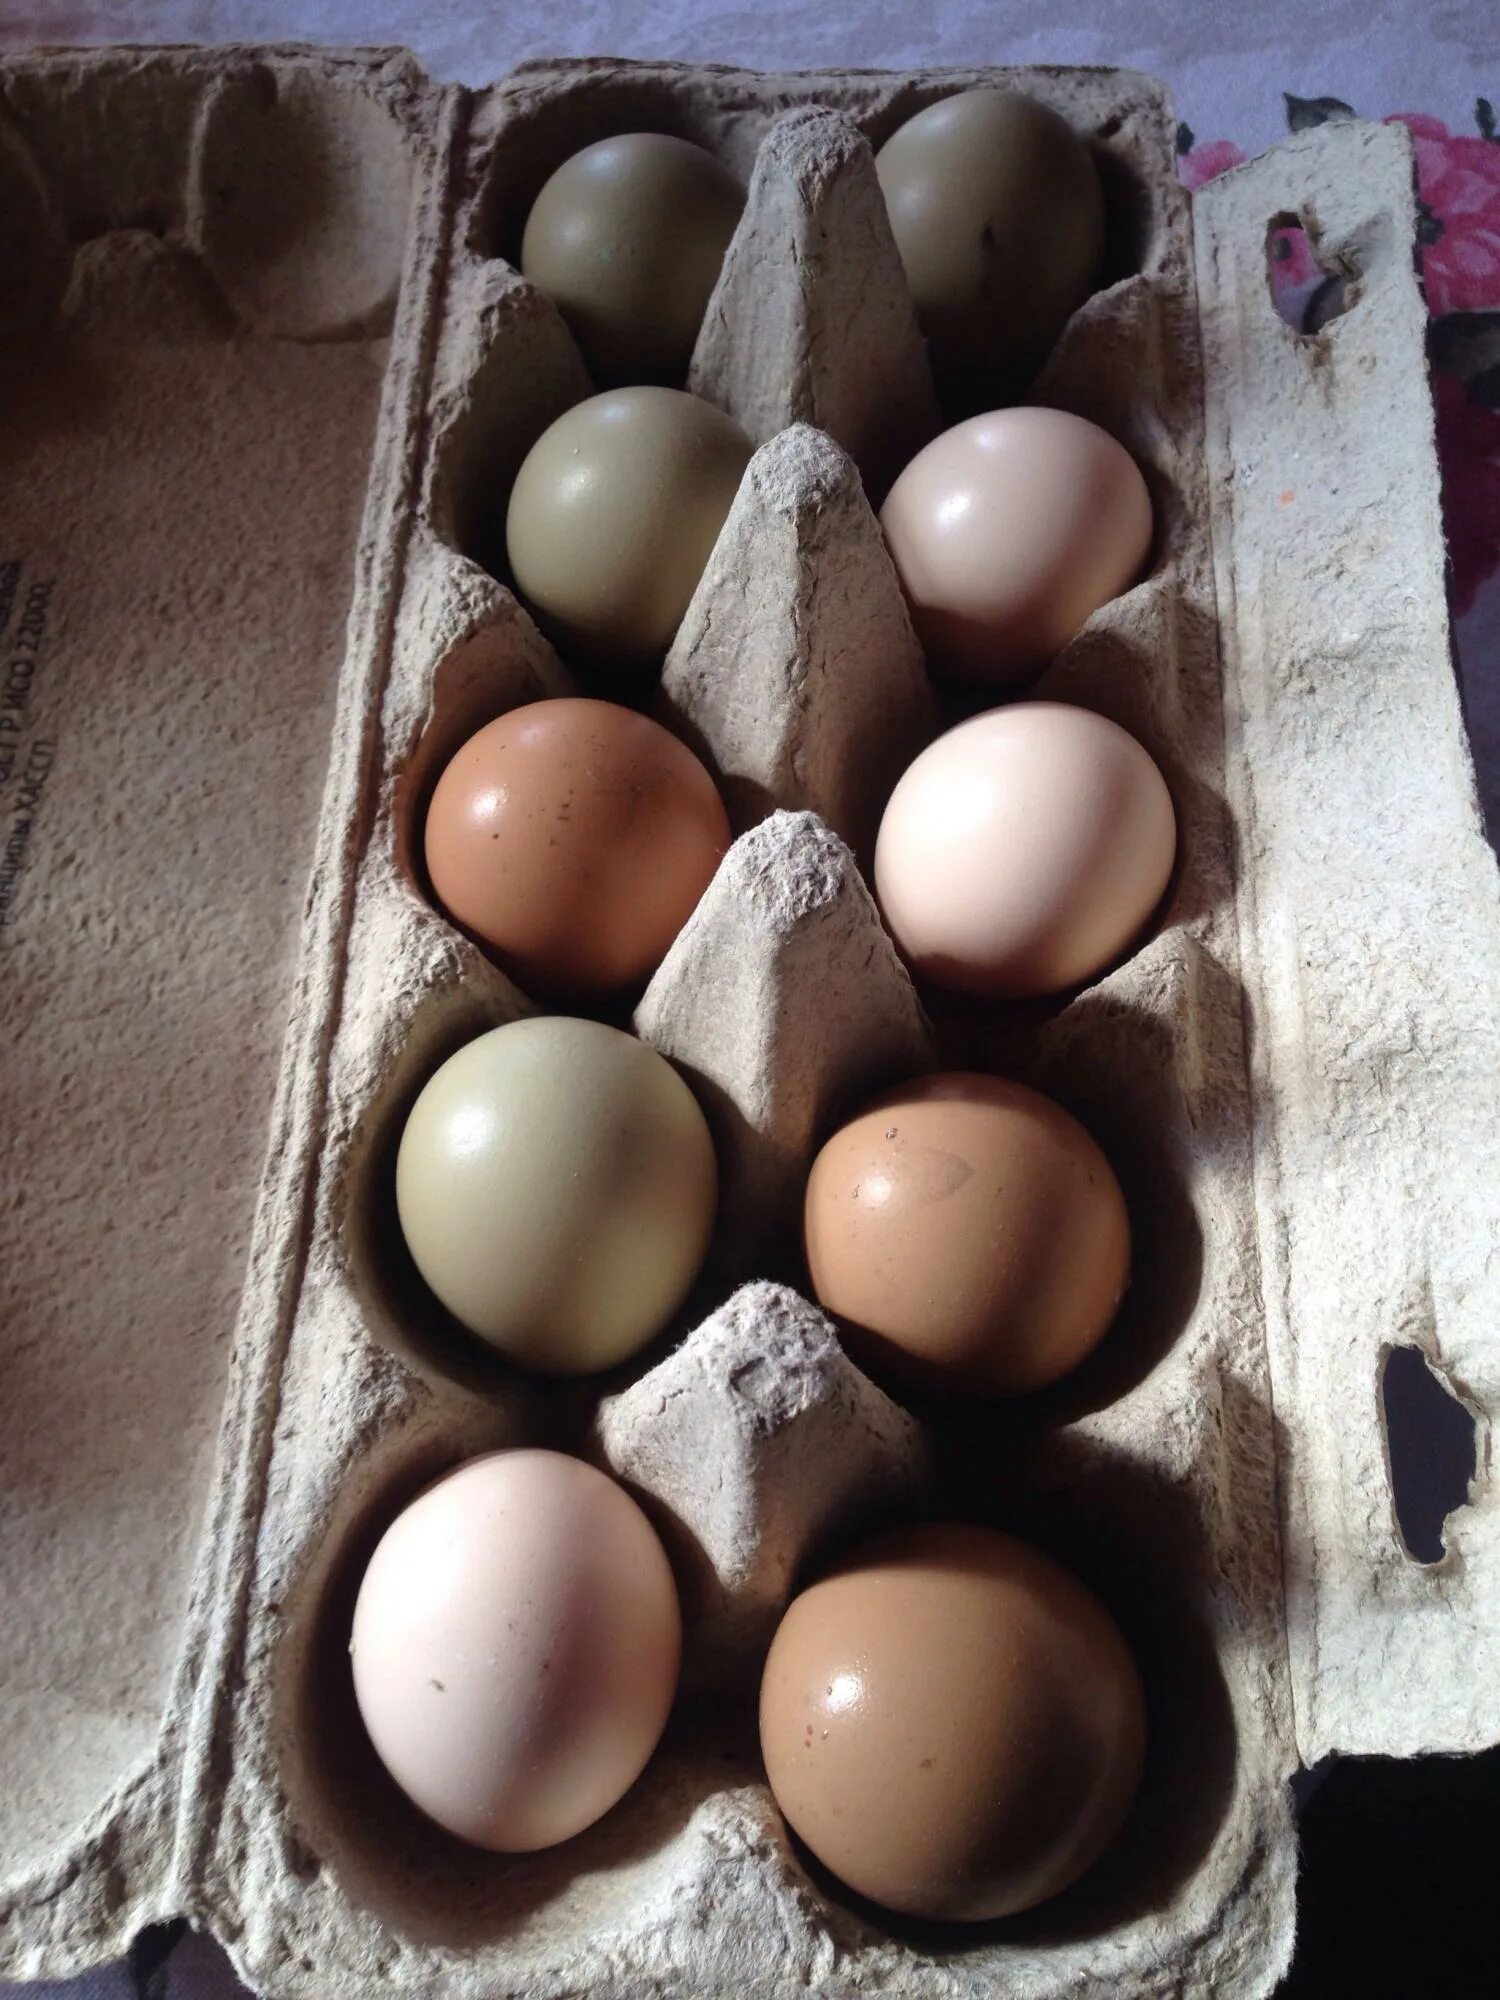 Яйцо фазана инкубационное. Инкубация фазаньих яиц. Маркировка инкубационного яйца f7203. Яйцо фазана румынского. Инкубационное яйцо фазана купить